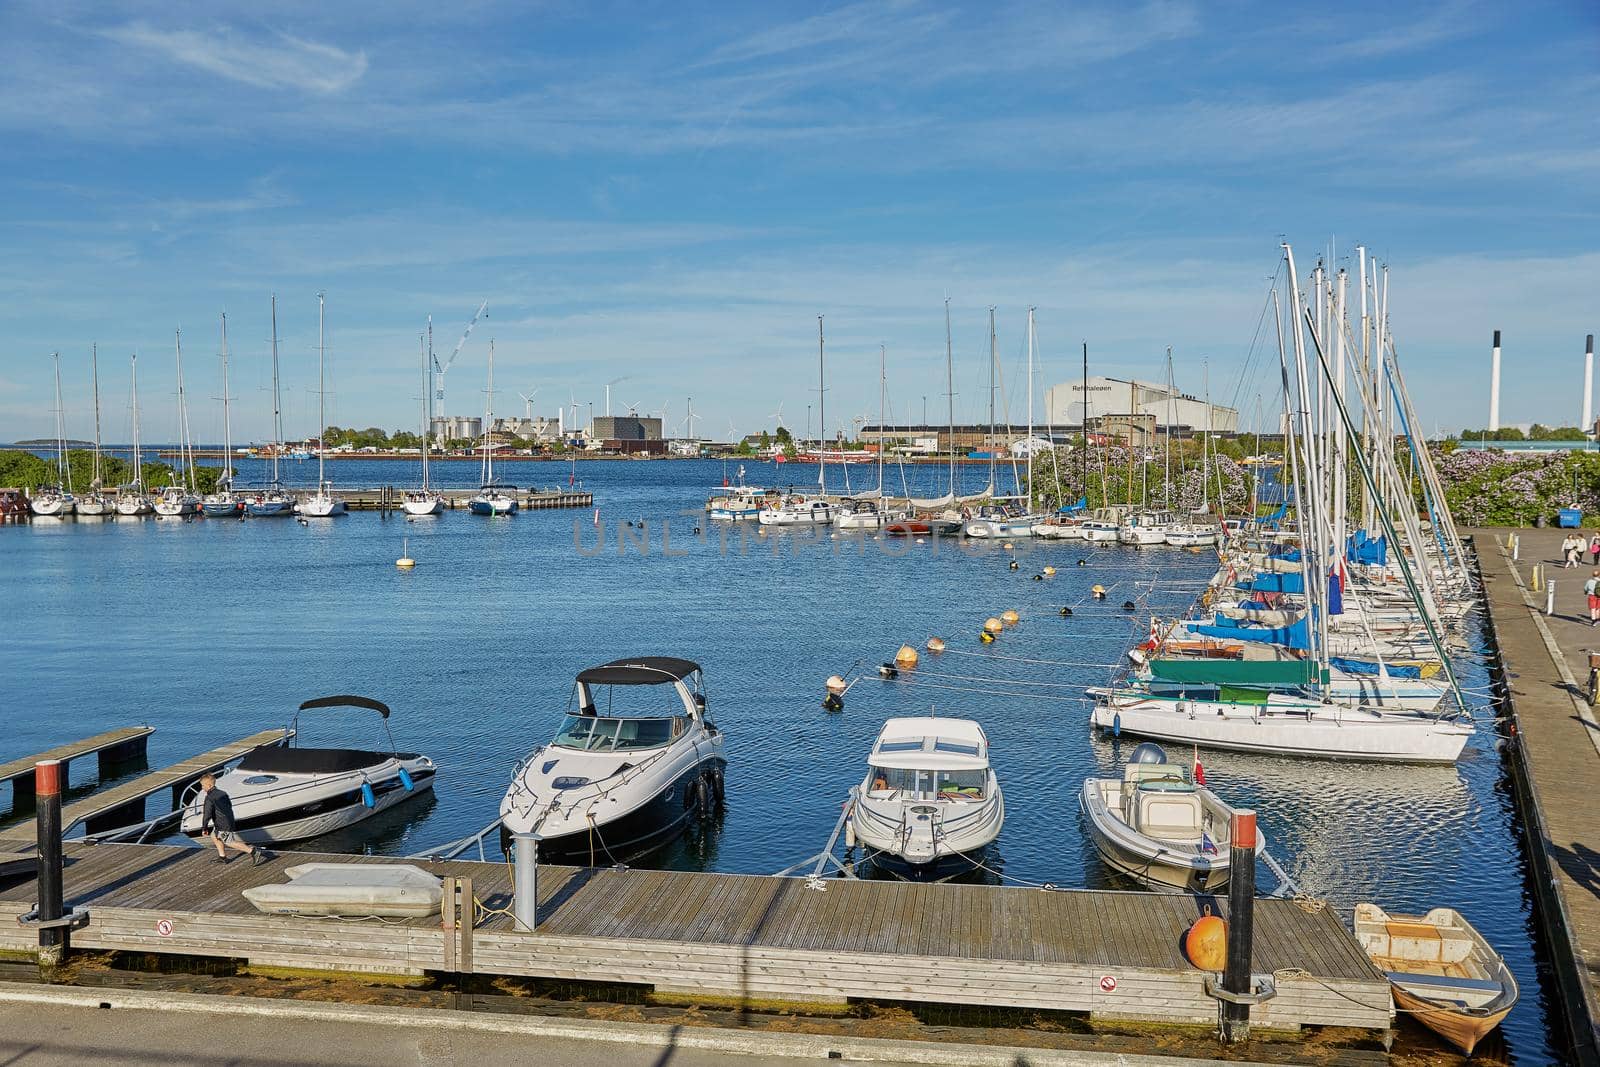 Luxury speedboats docked along side of wooden promenade at Danish capital of Copenhagen by wondry